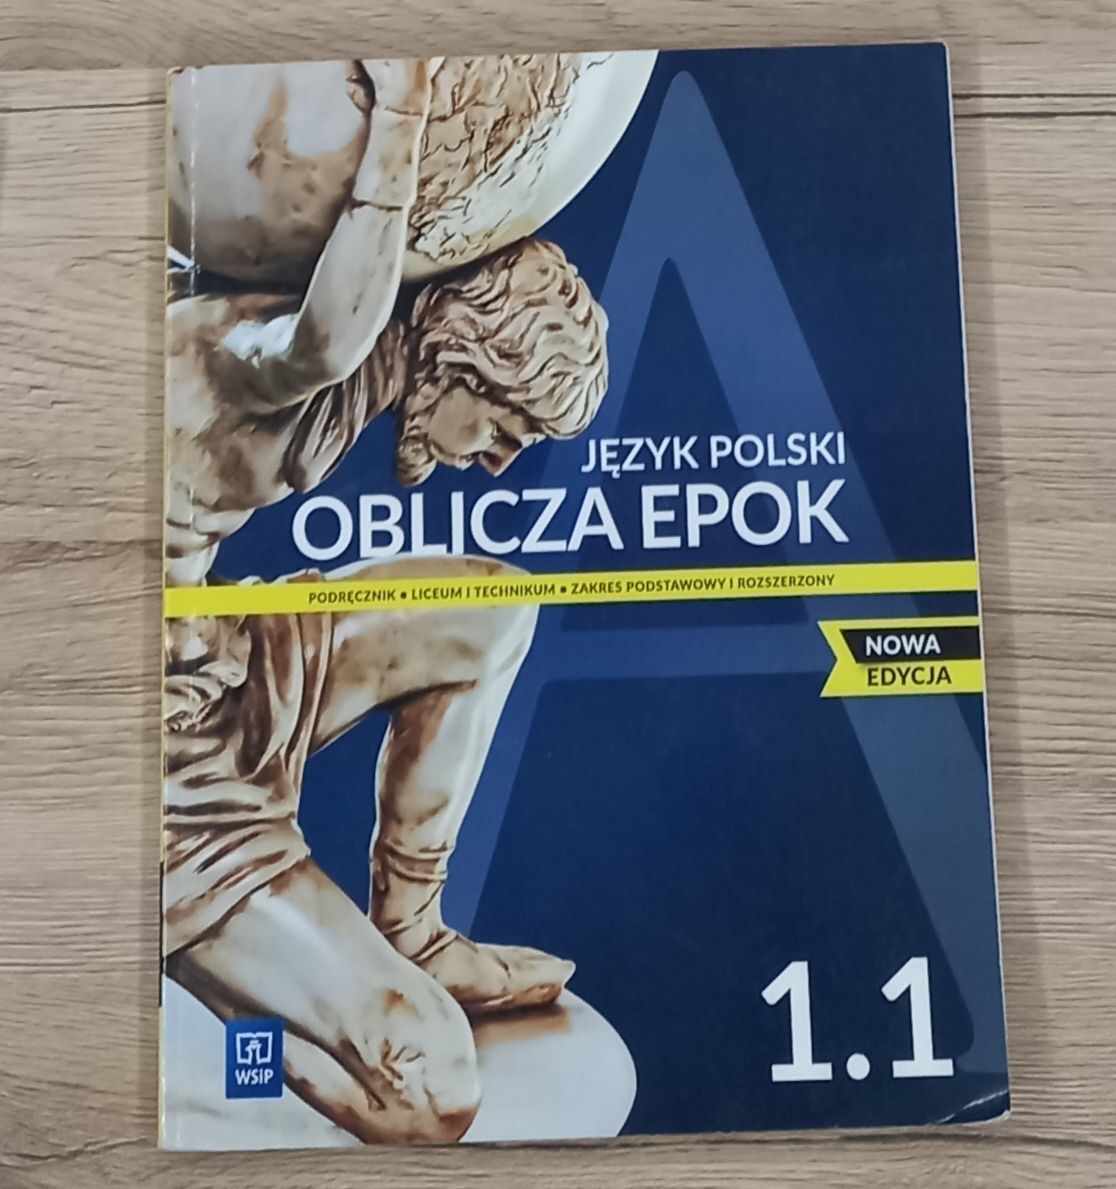 Podręcznika do Języka Polskiego "Oblicza epok 1.1"